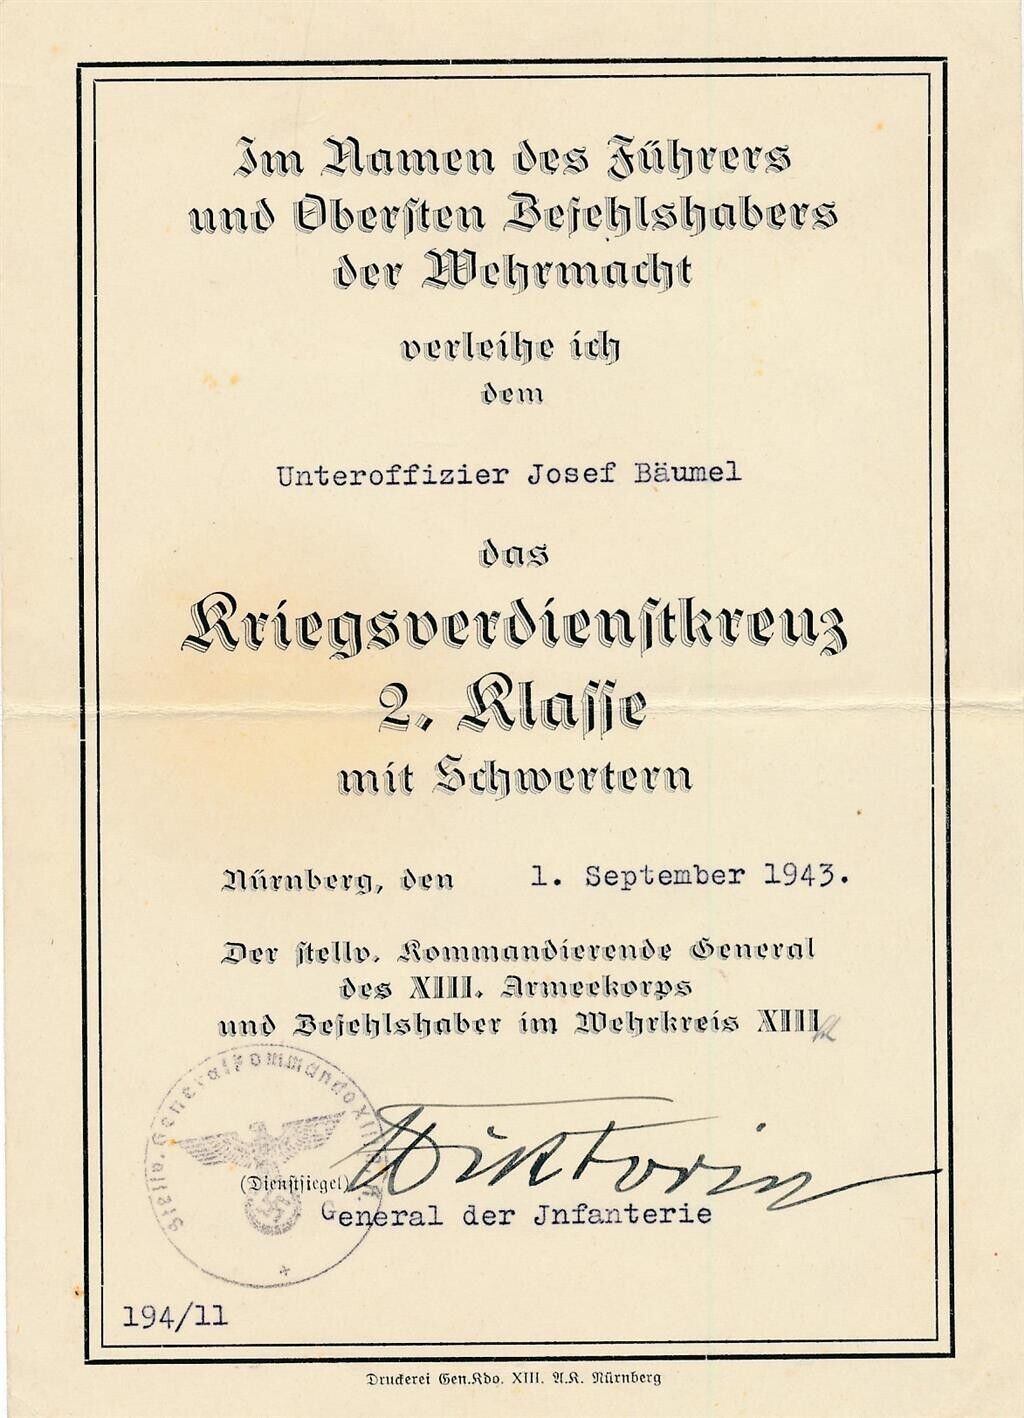 Mauritz von Wiktorin- Signed German Document from 1943